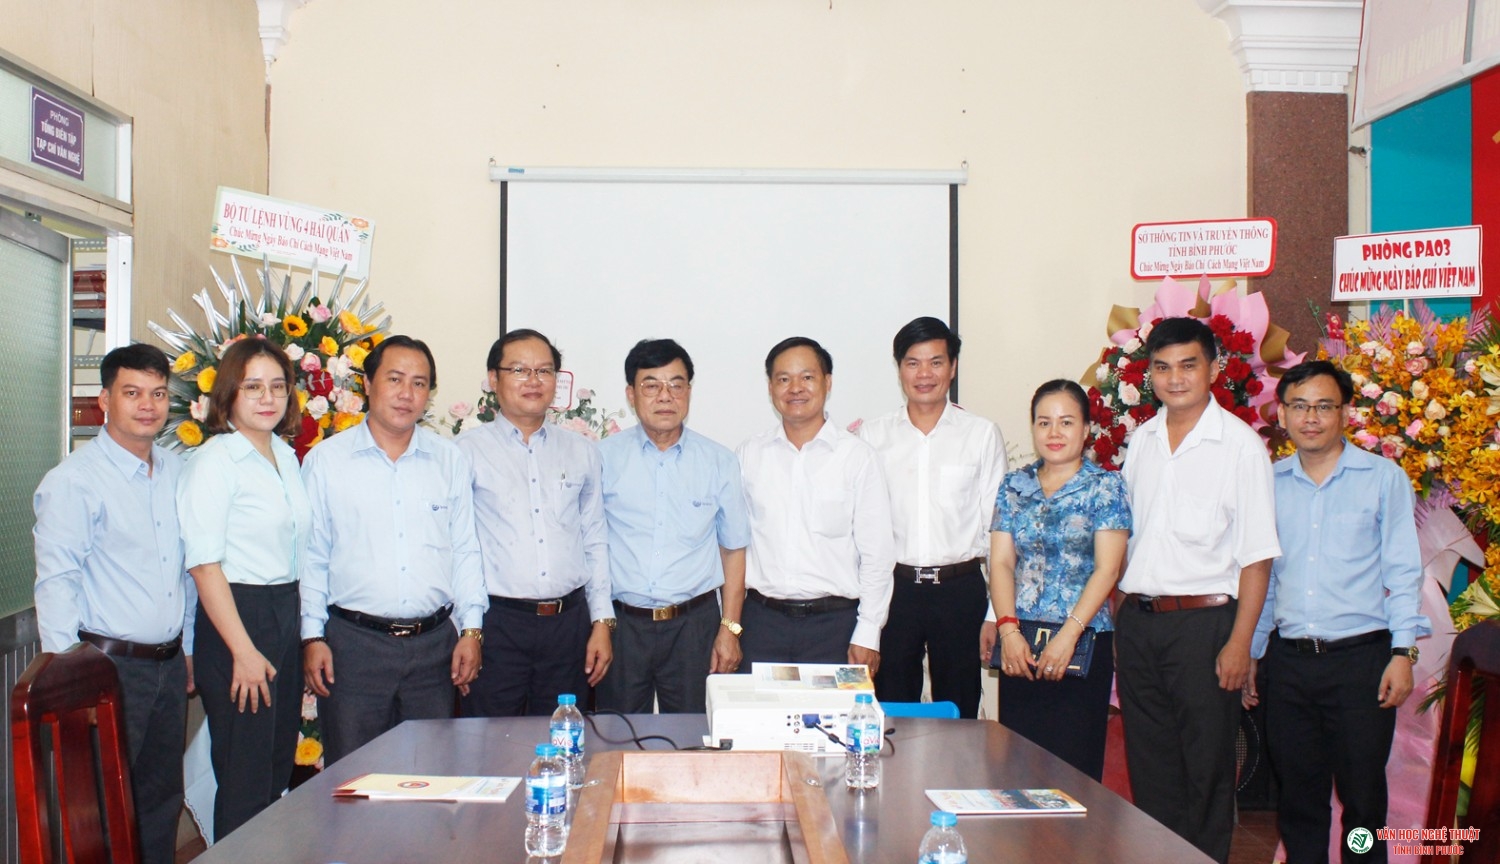 Đoàn đại biểu lãnh đạo tỉnh đến thăm, chúc mừng Tạp chí Văn nghệ Bình Phước nhân dịp kỷ niệm 97 năm Ngày Báo chí cách mạng Việt Nam (21/6/1925-21/6/2022)